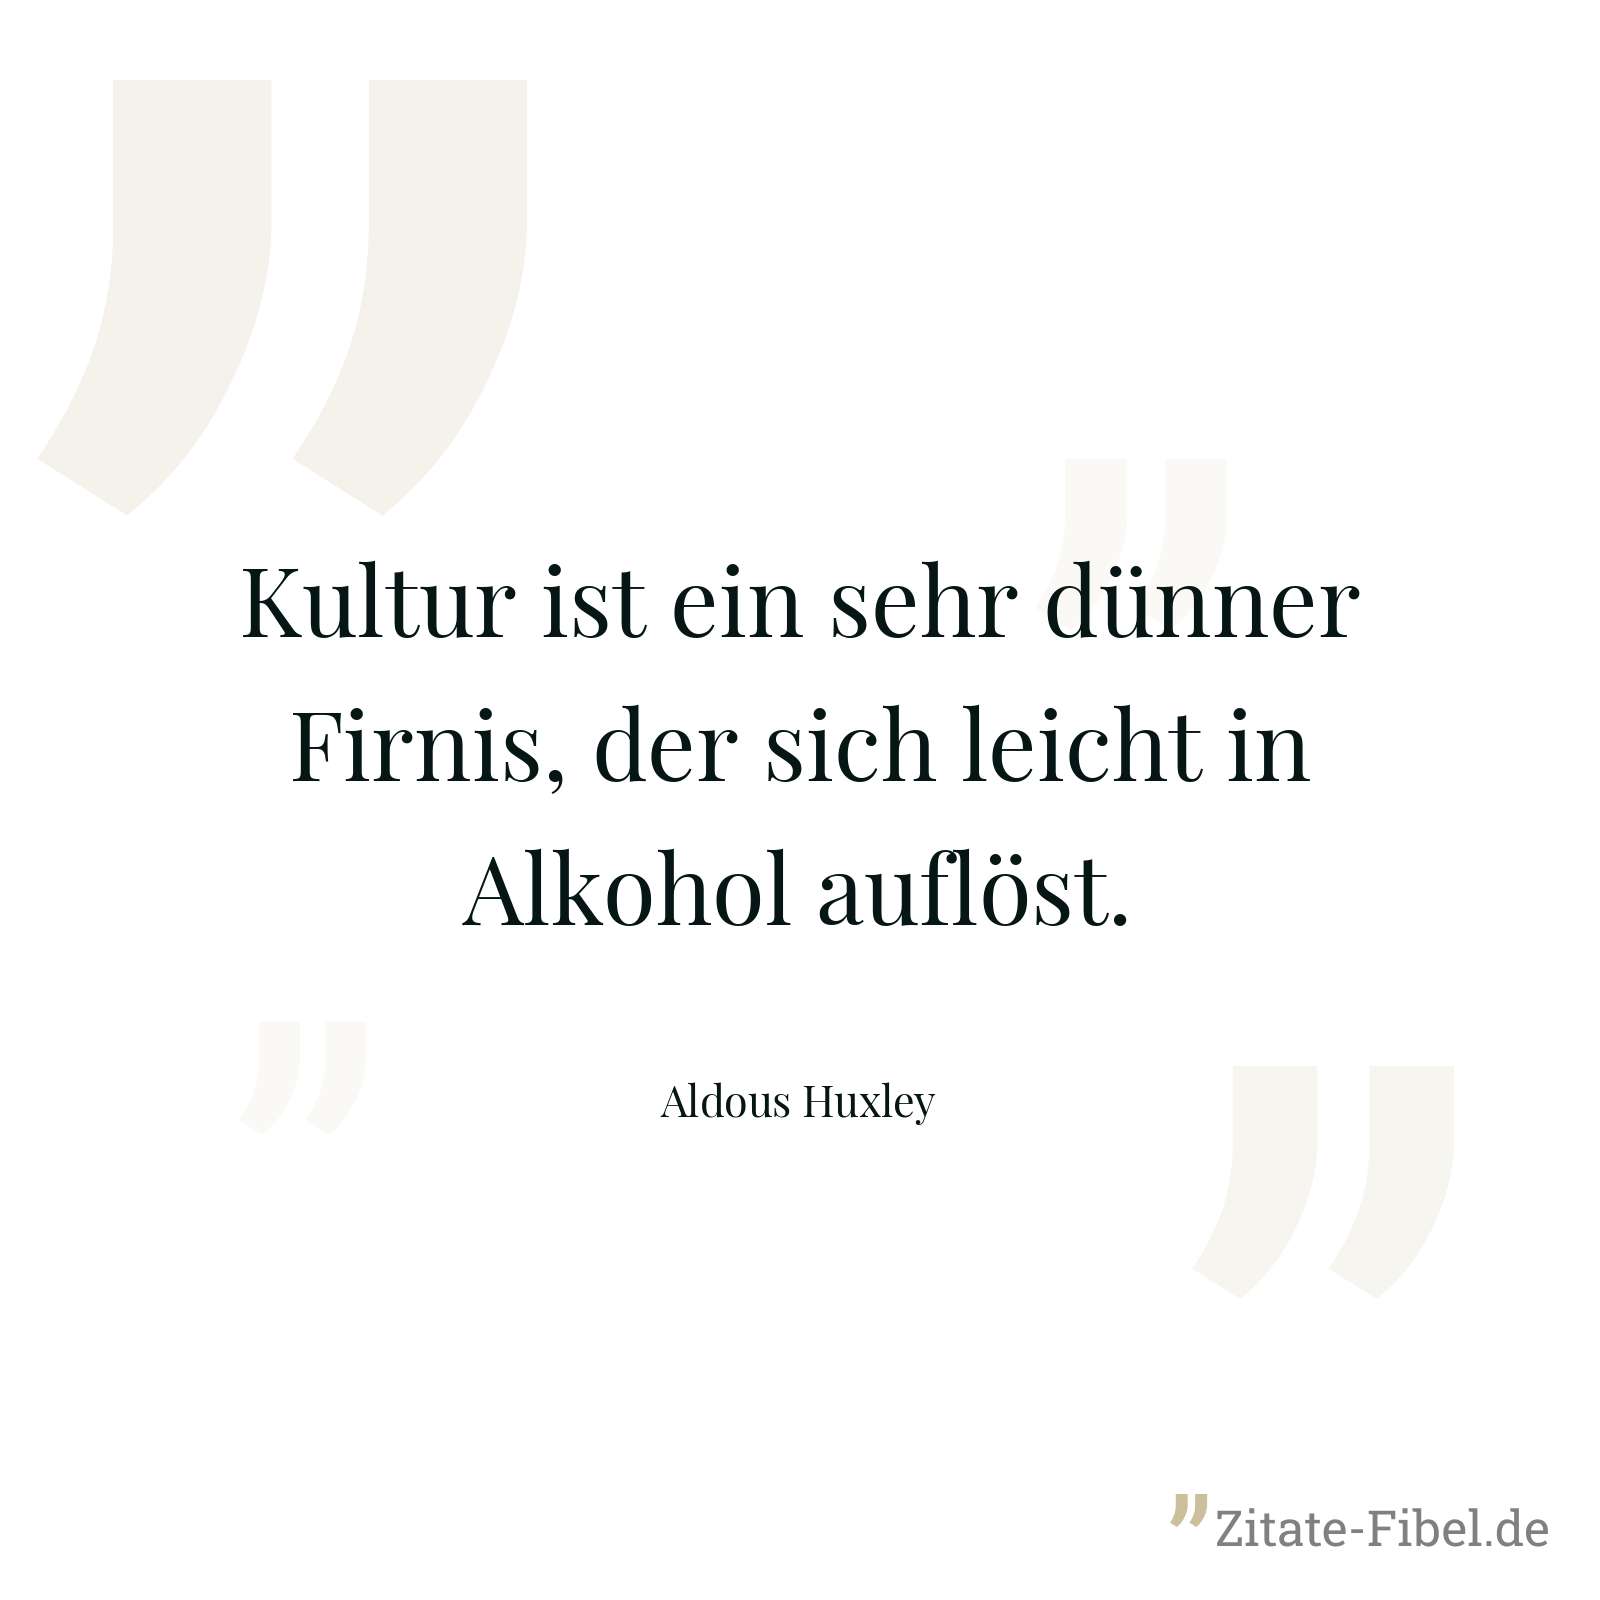 Kultur ist ein sehr dünner Firnis, der sich leicht in Alkohol auflöst. - Aldous Huxley